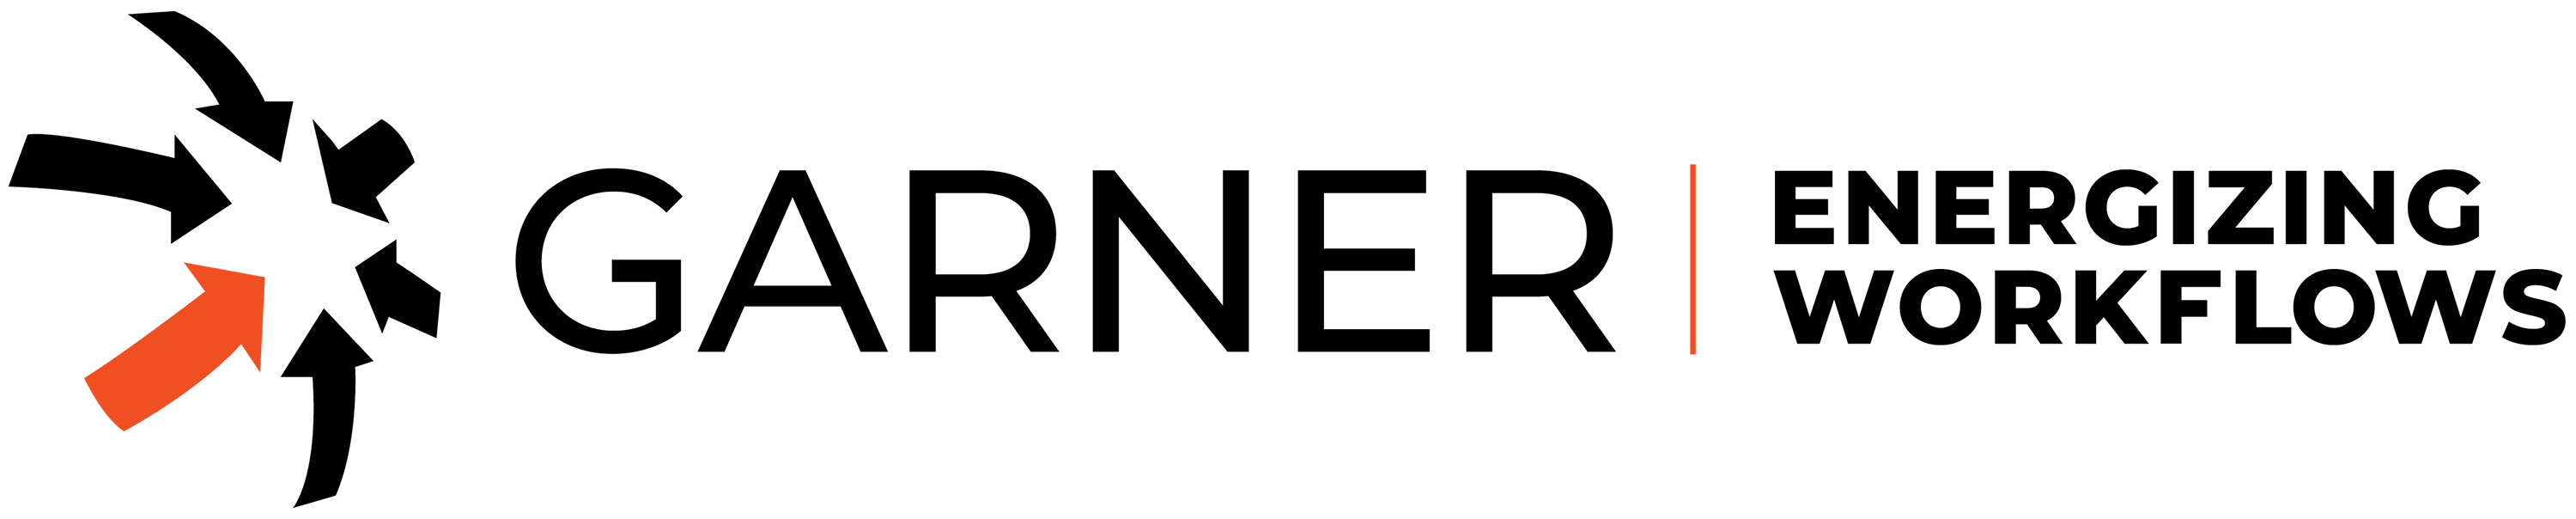 Garner Energizing Workflows (Brand Logo)